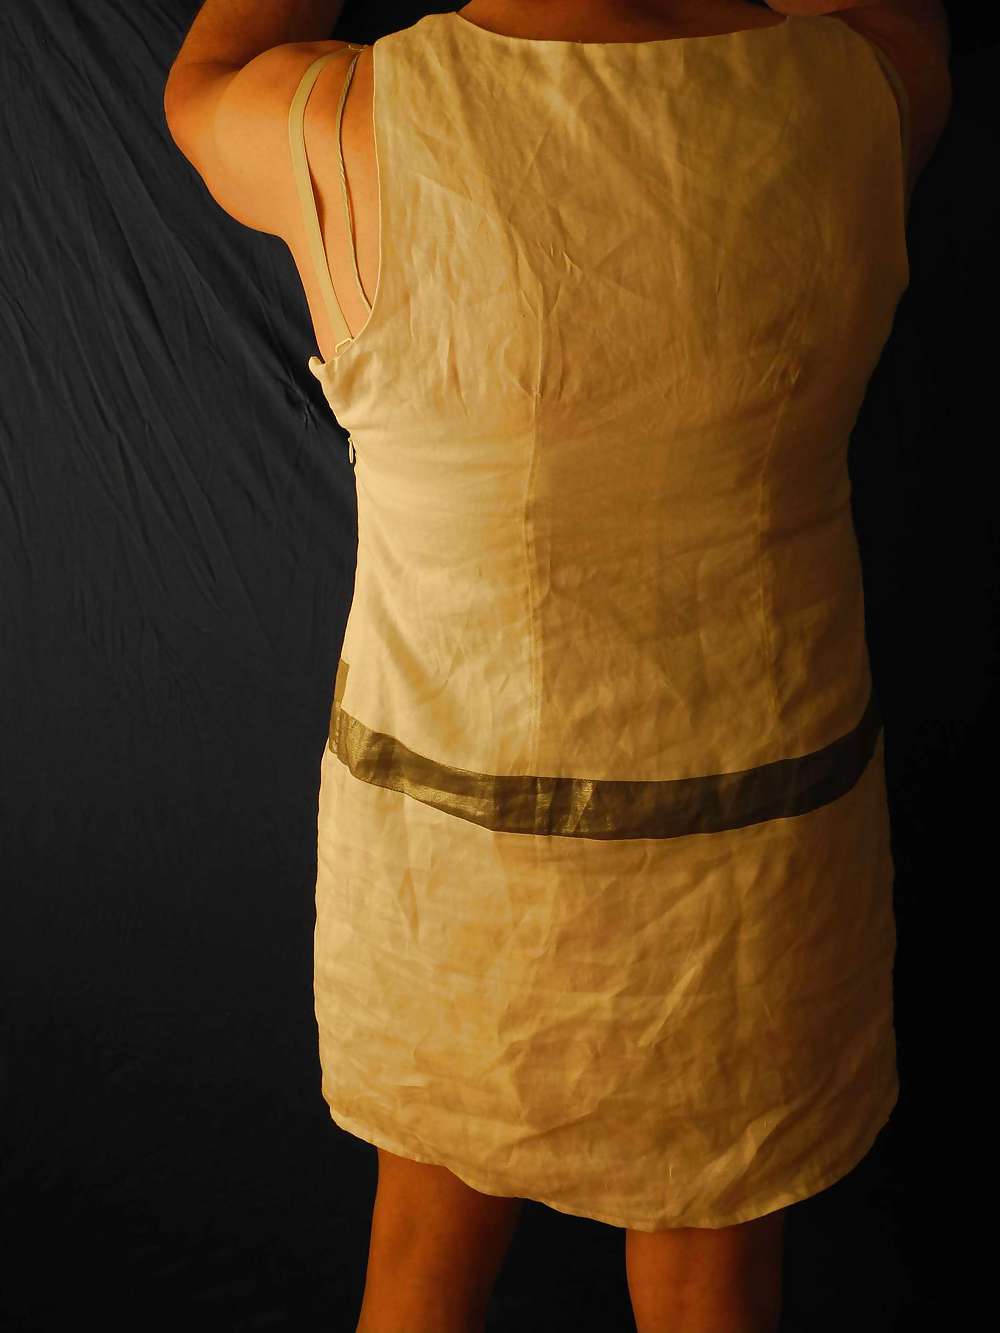 Dress form wife.lingerie bra nylon stocking  #11800423